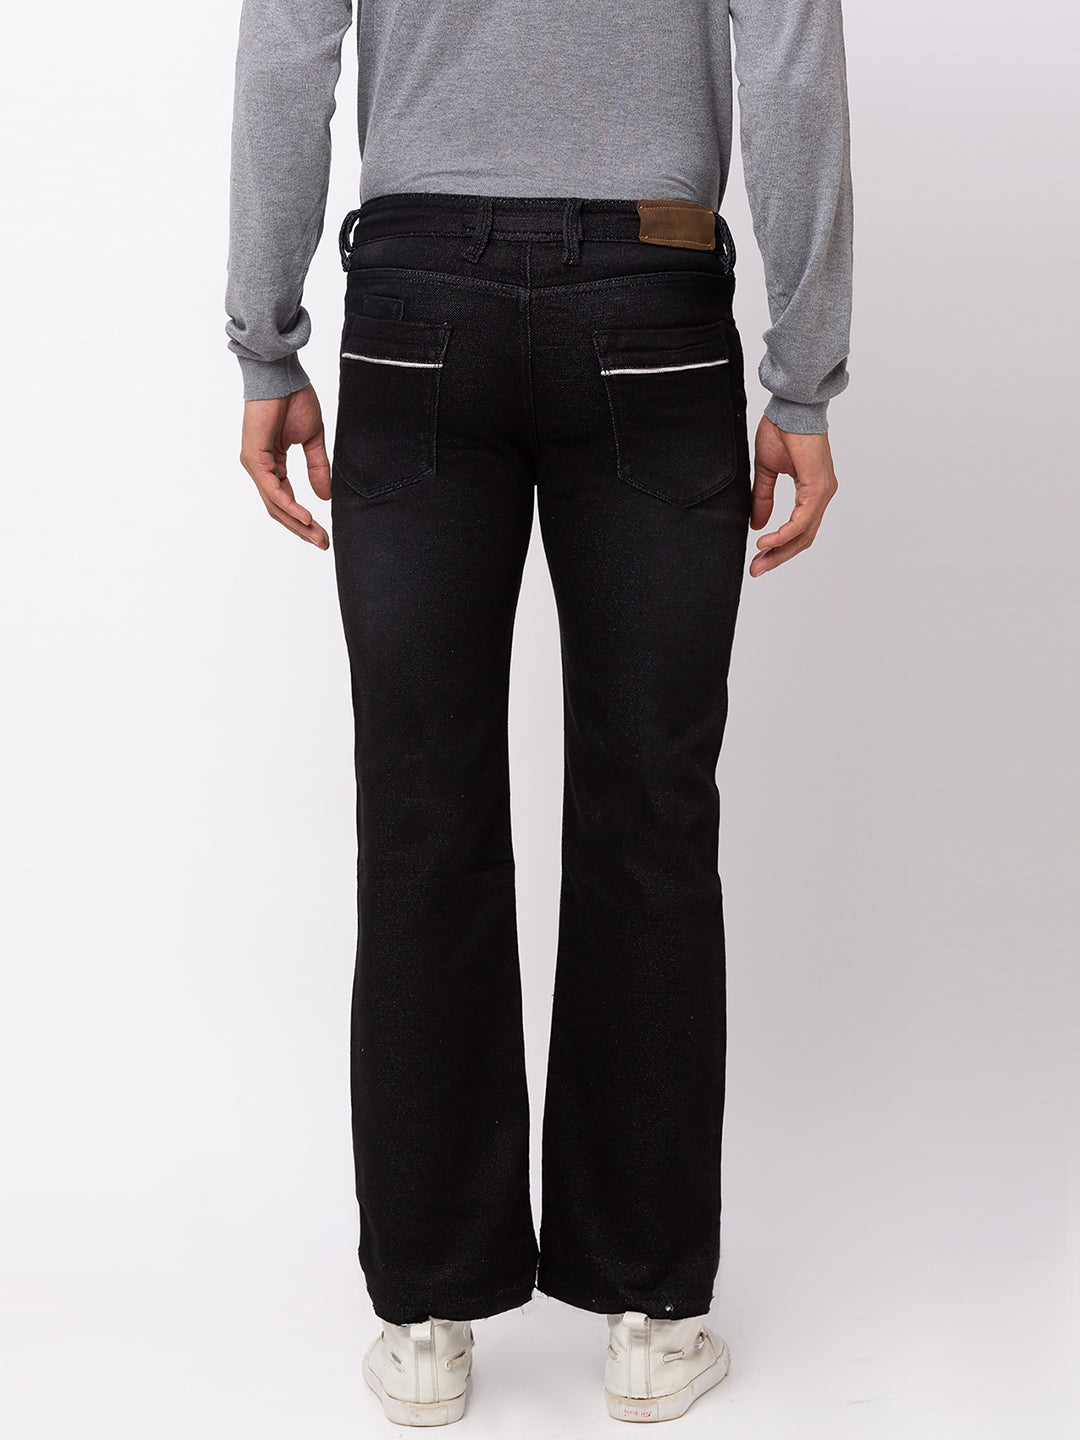 Carbon Black Bootcut Jeans for Men